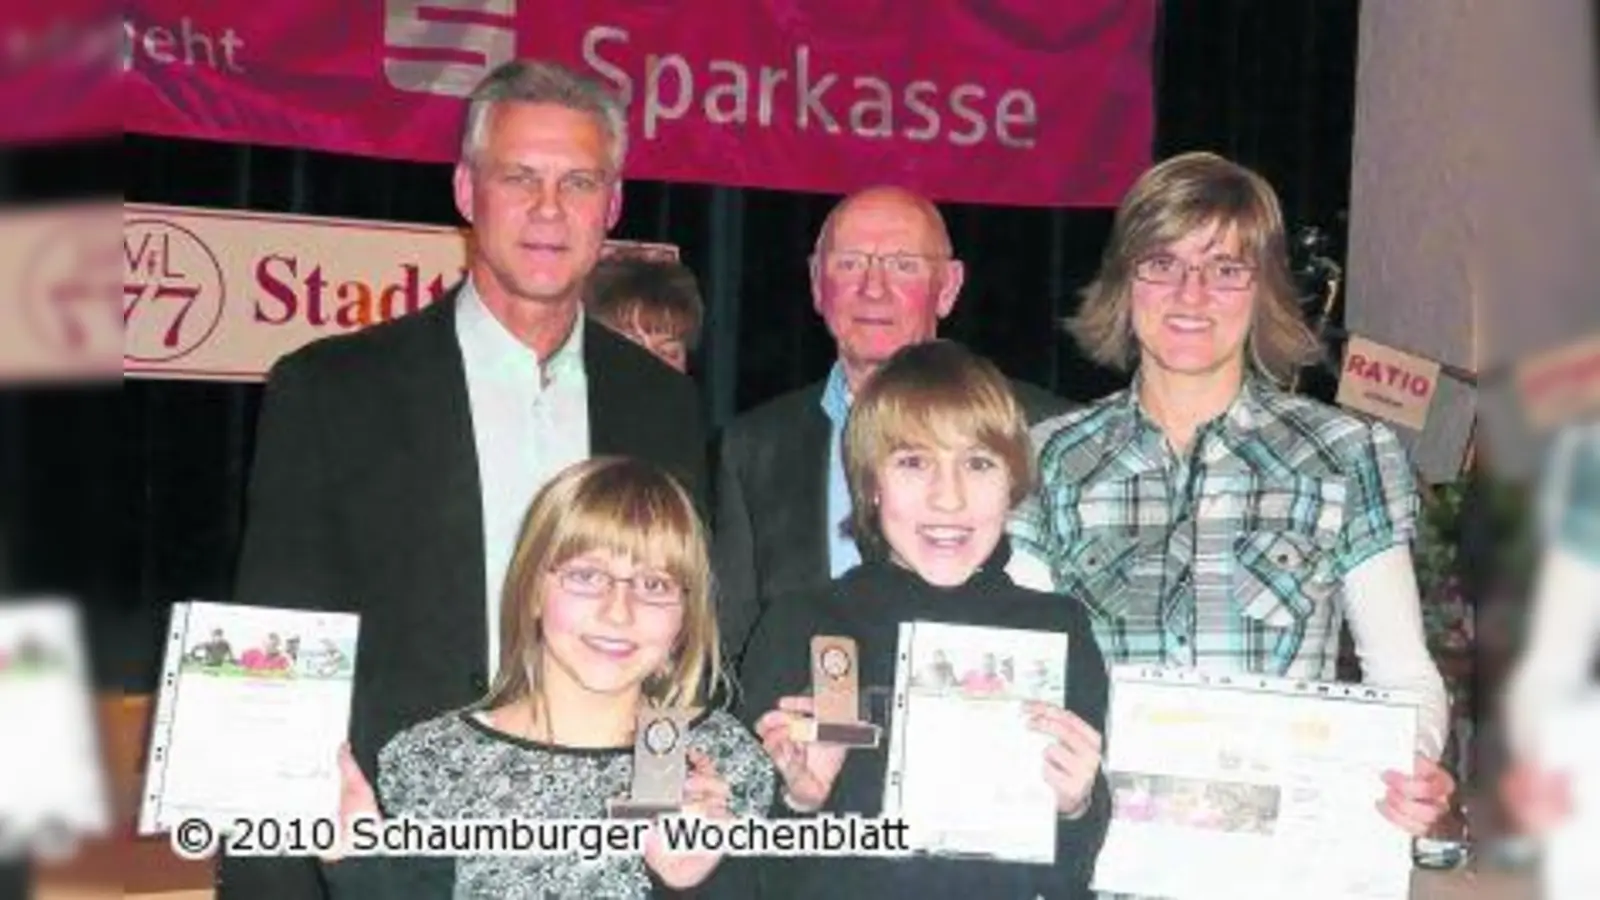 VfL Stadthagen verleiht 195 Deutsche Sportabzeichen (Foto: wtz)